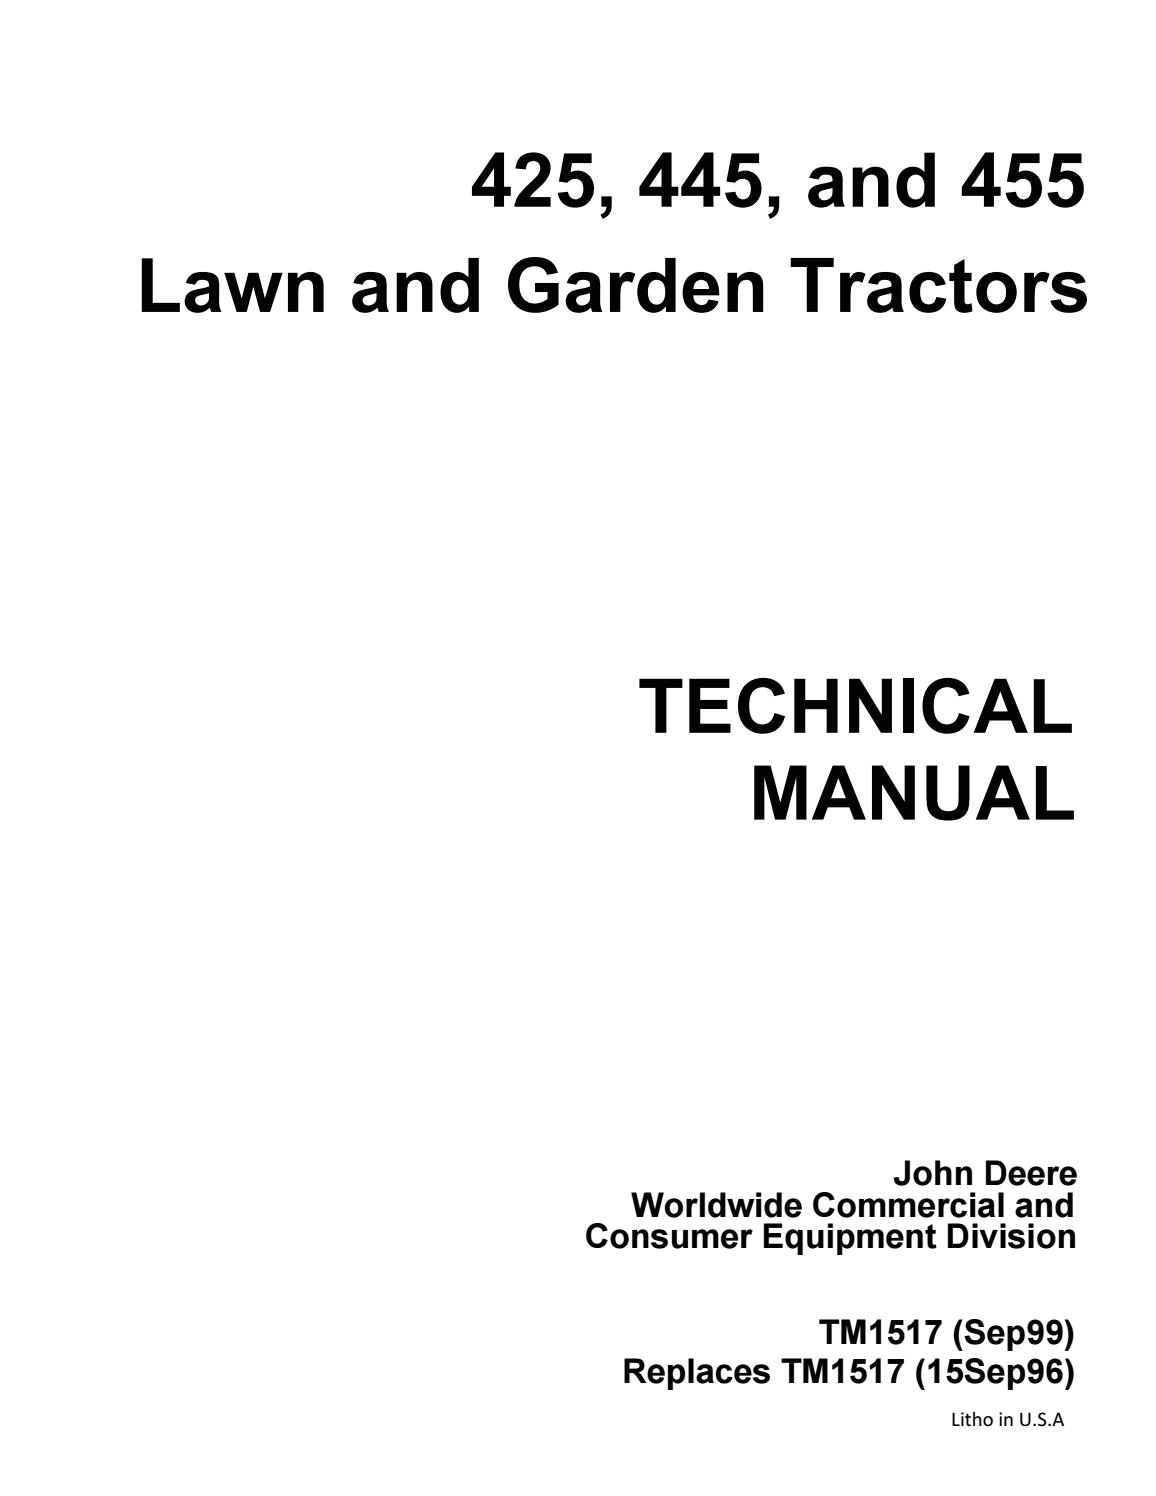 John Deere 455 Diesel Wiring Diagram John Deere 455 Lawn Garden Tractor Service Repair Manual by